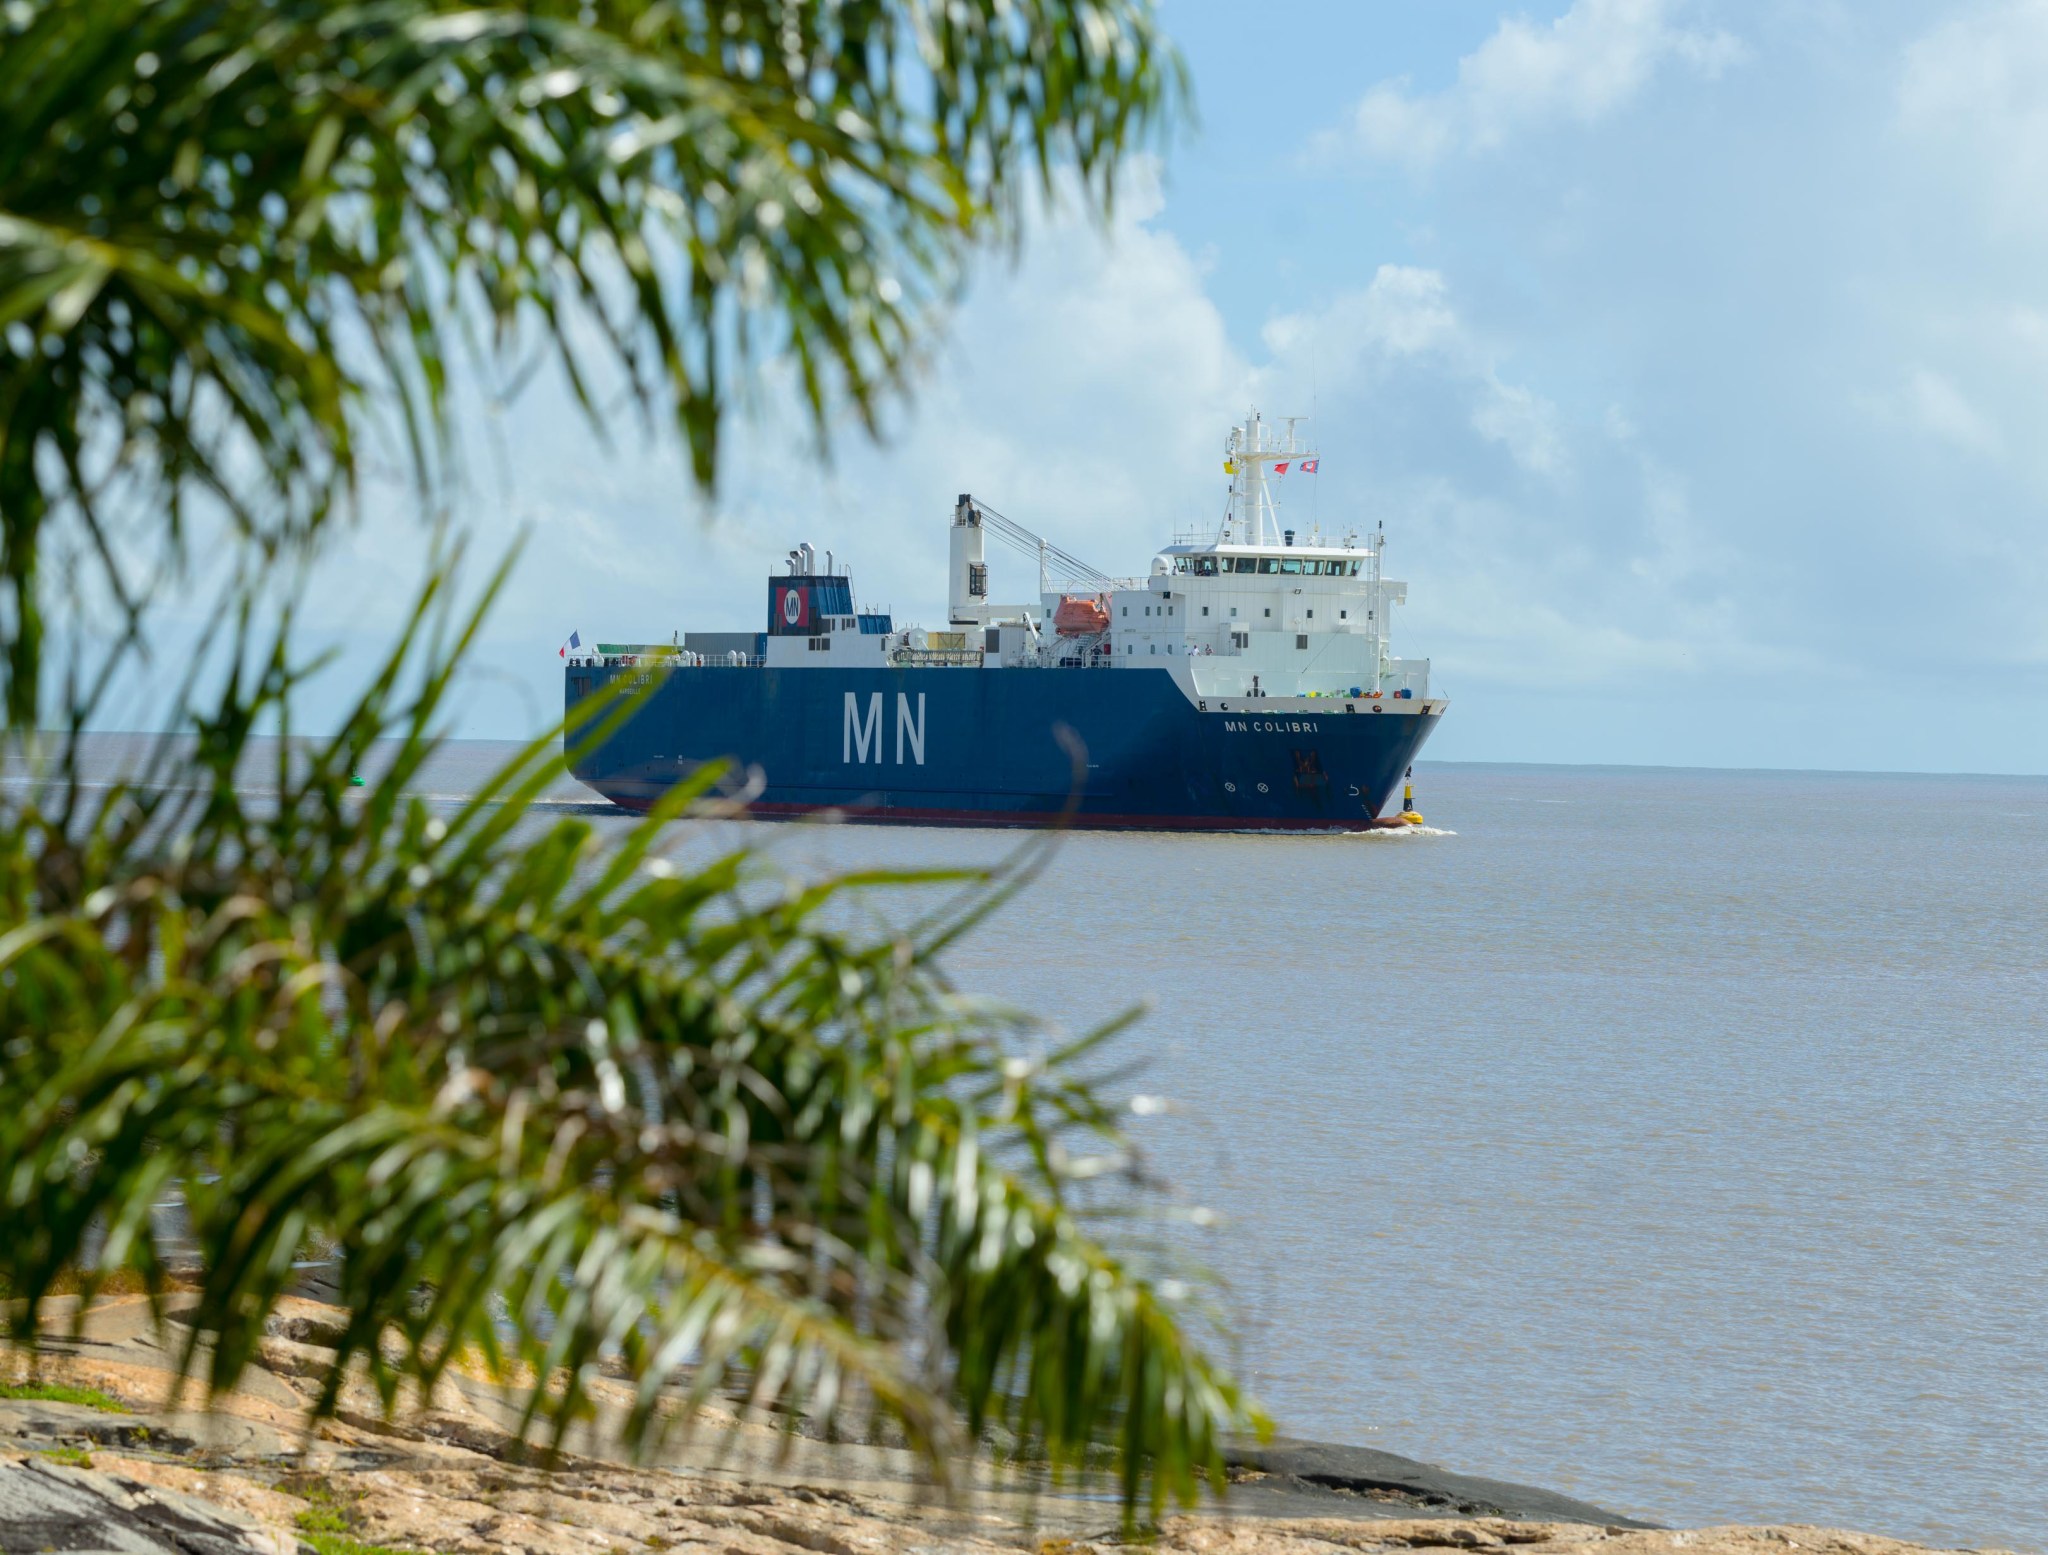 The ship MN Colibri, seen from shore, as it enters Port de Pariacabo.